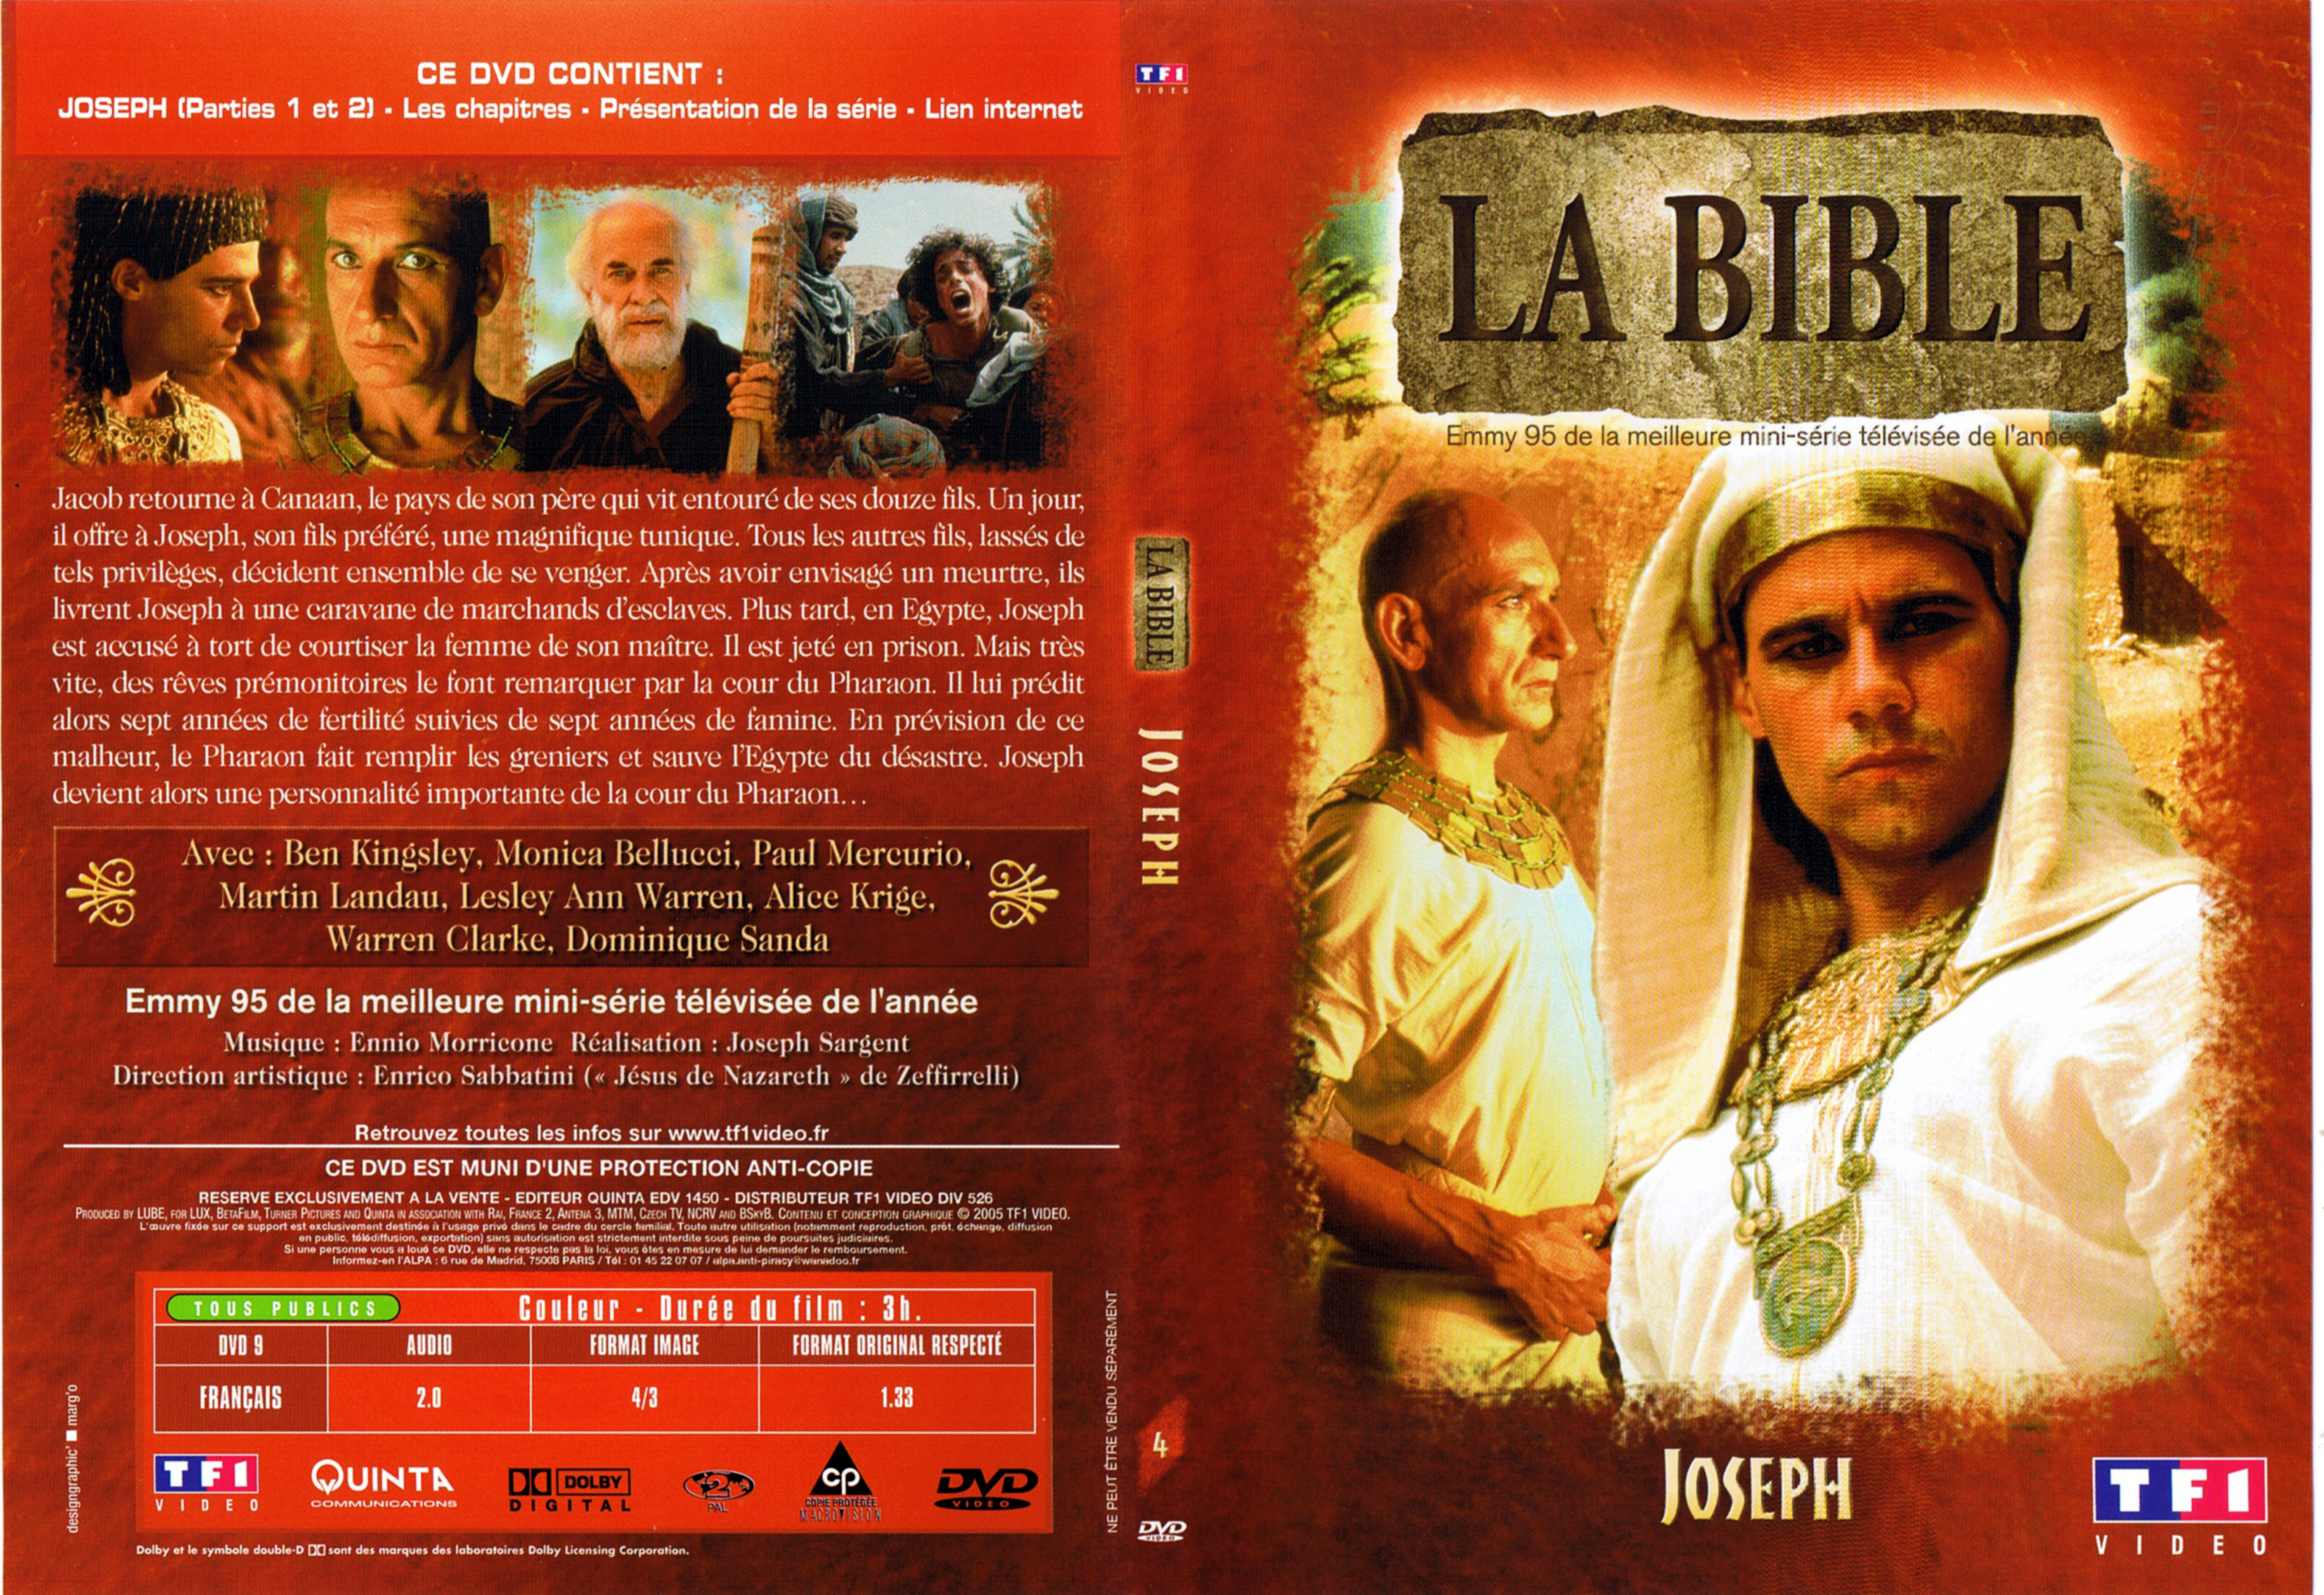 Jaquette DVD La bible - Joseph